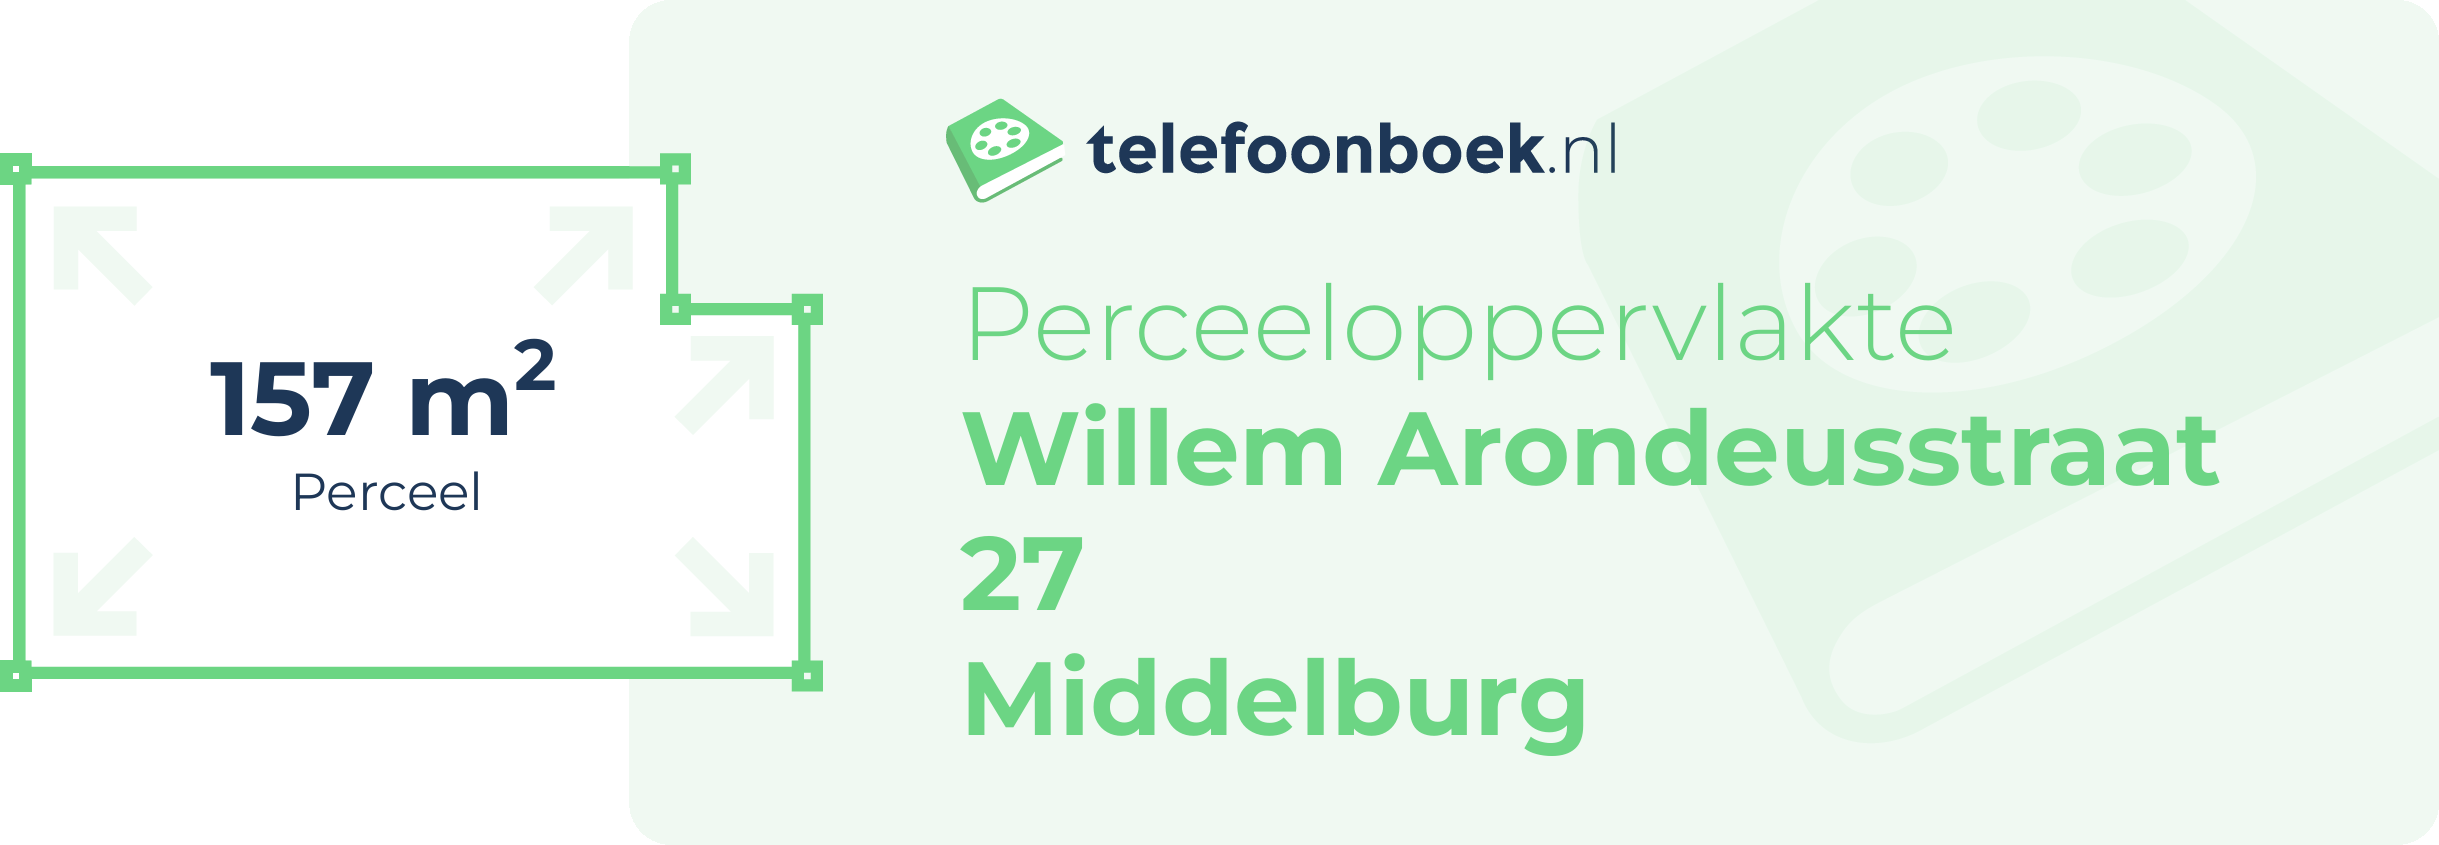 Perceeloppervlakte Willem Arondeusstraat 27 Middelburg